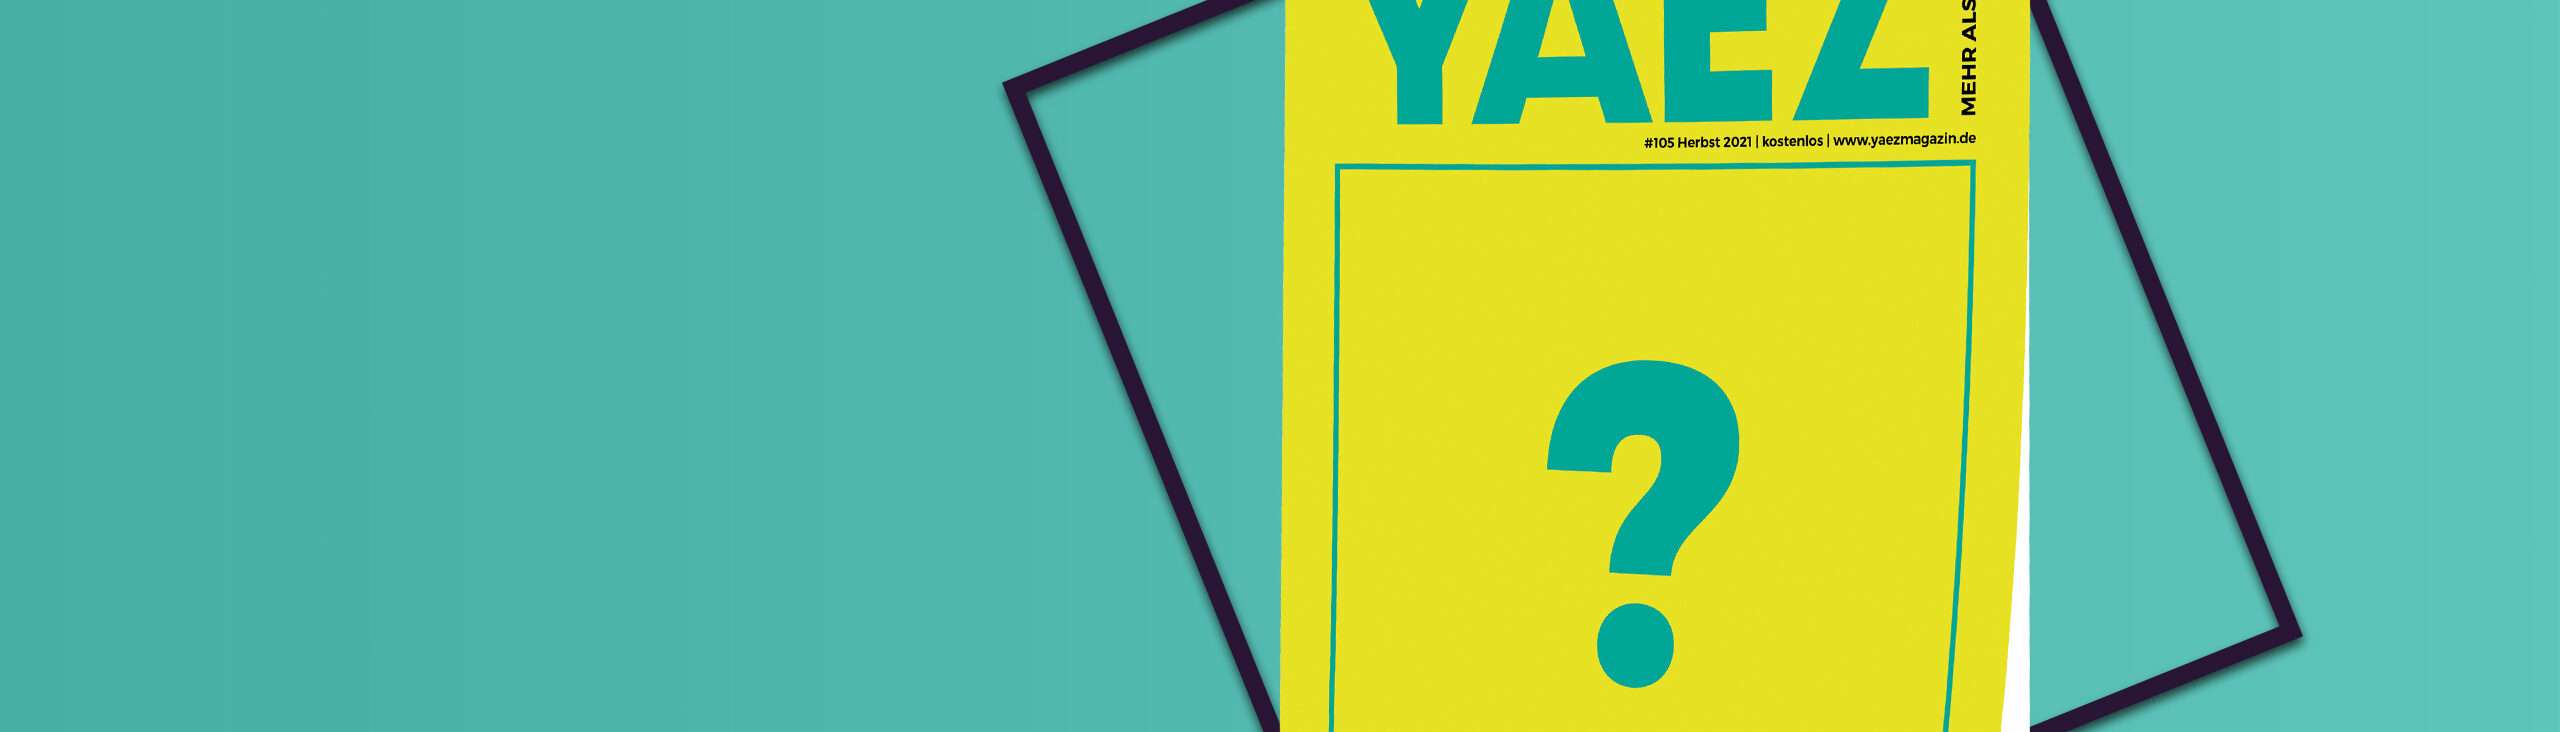 YAEZ Magazin mit Fragezeichen auf dem Cover